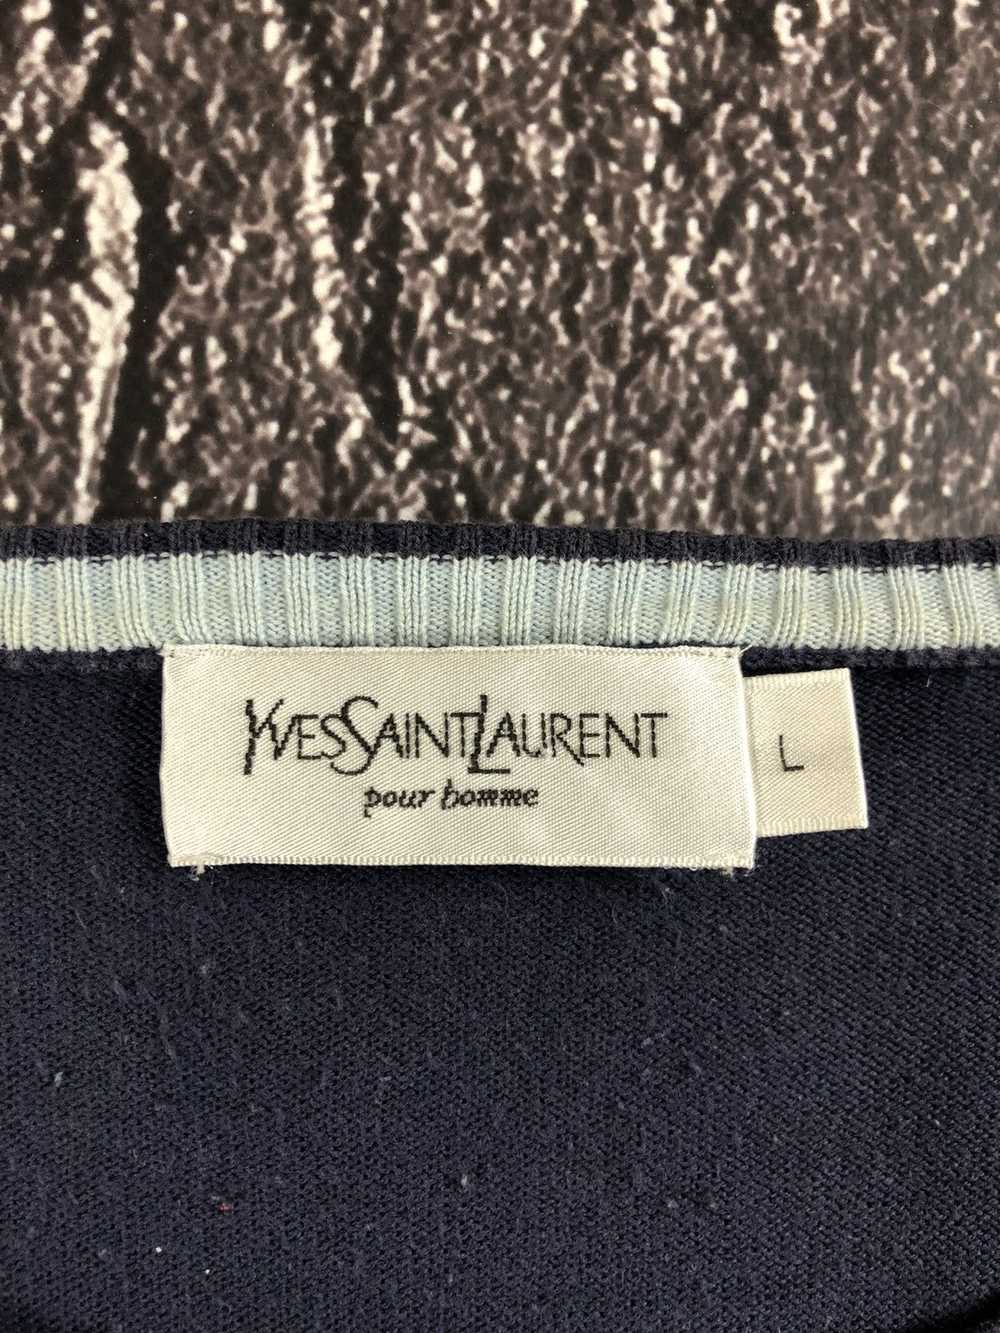 Vintage × Ysl Pour Homme Yves saint Laurent vinta… - image 3